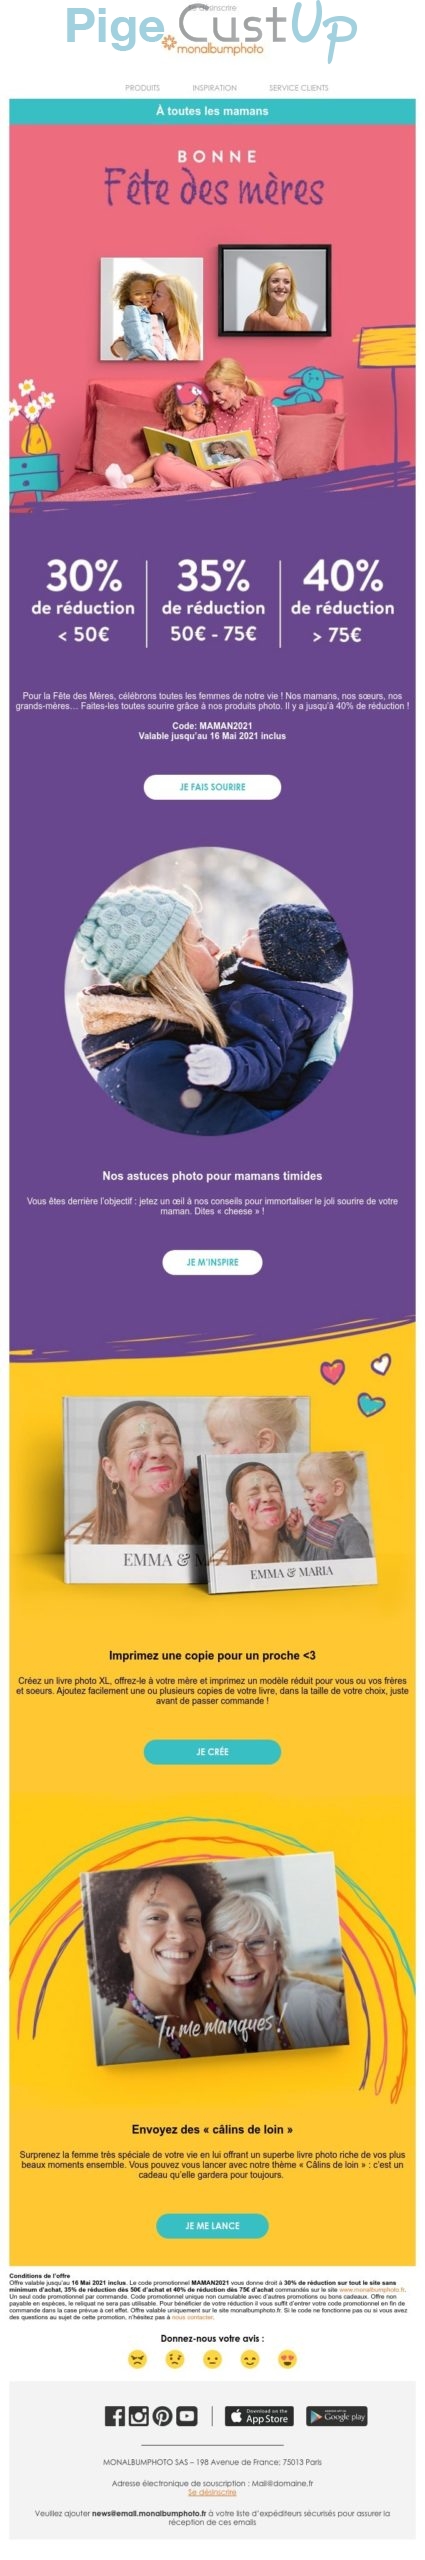 Exemple de Type de media  e-mailing - Monalbumphoto - Marketing relationnel - Calendaire (Noël, St valentin, Vœux, …)